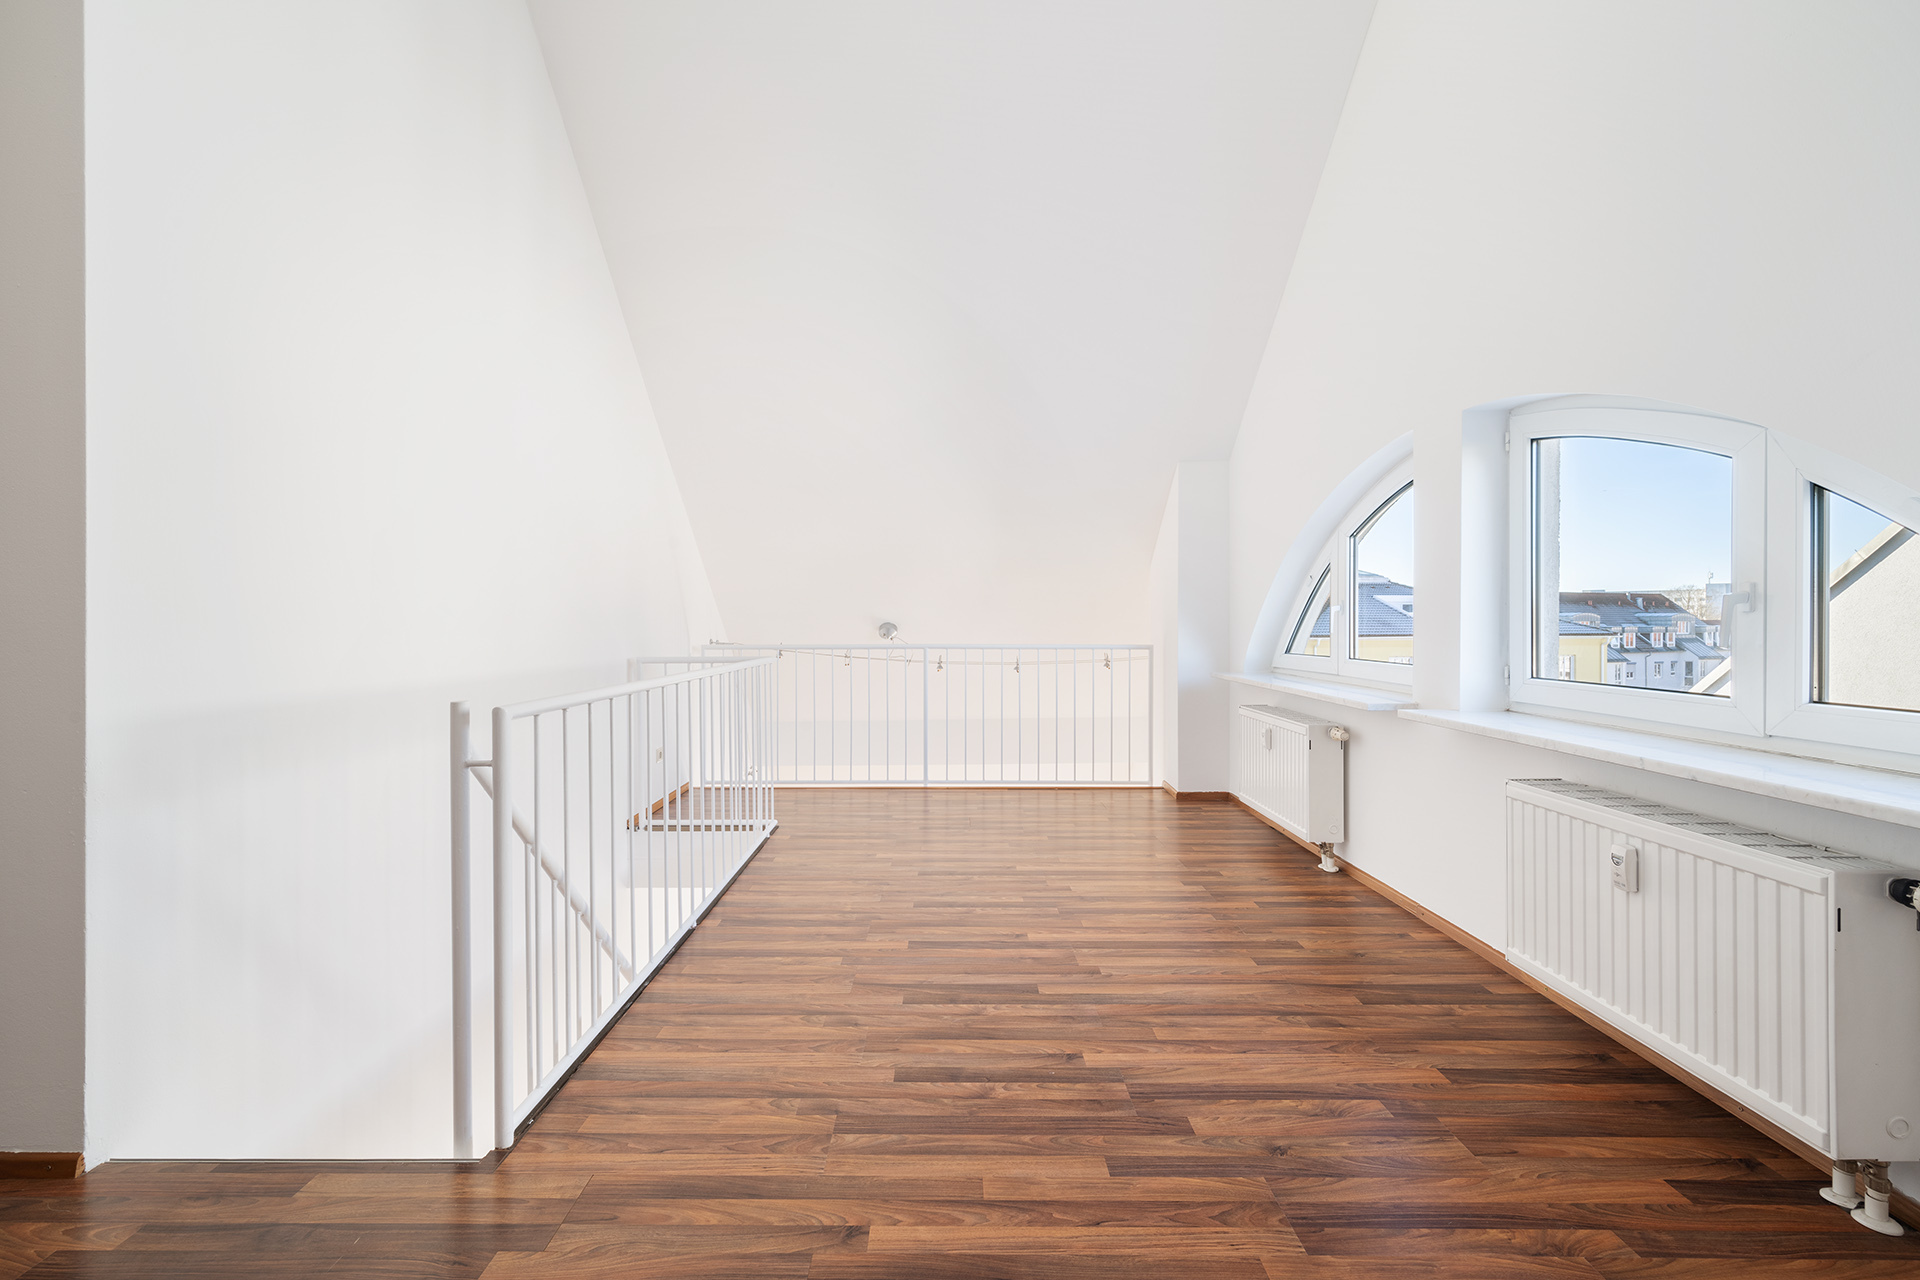 3-Zimmer Galerie-Wohnung mit Dachterrasse am Stadtpark *Fernwärme* - Galerie